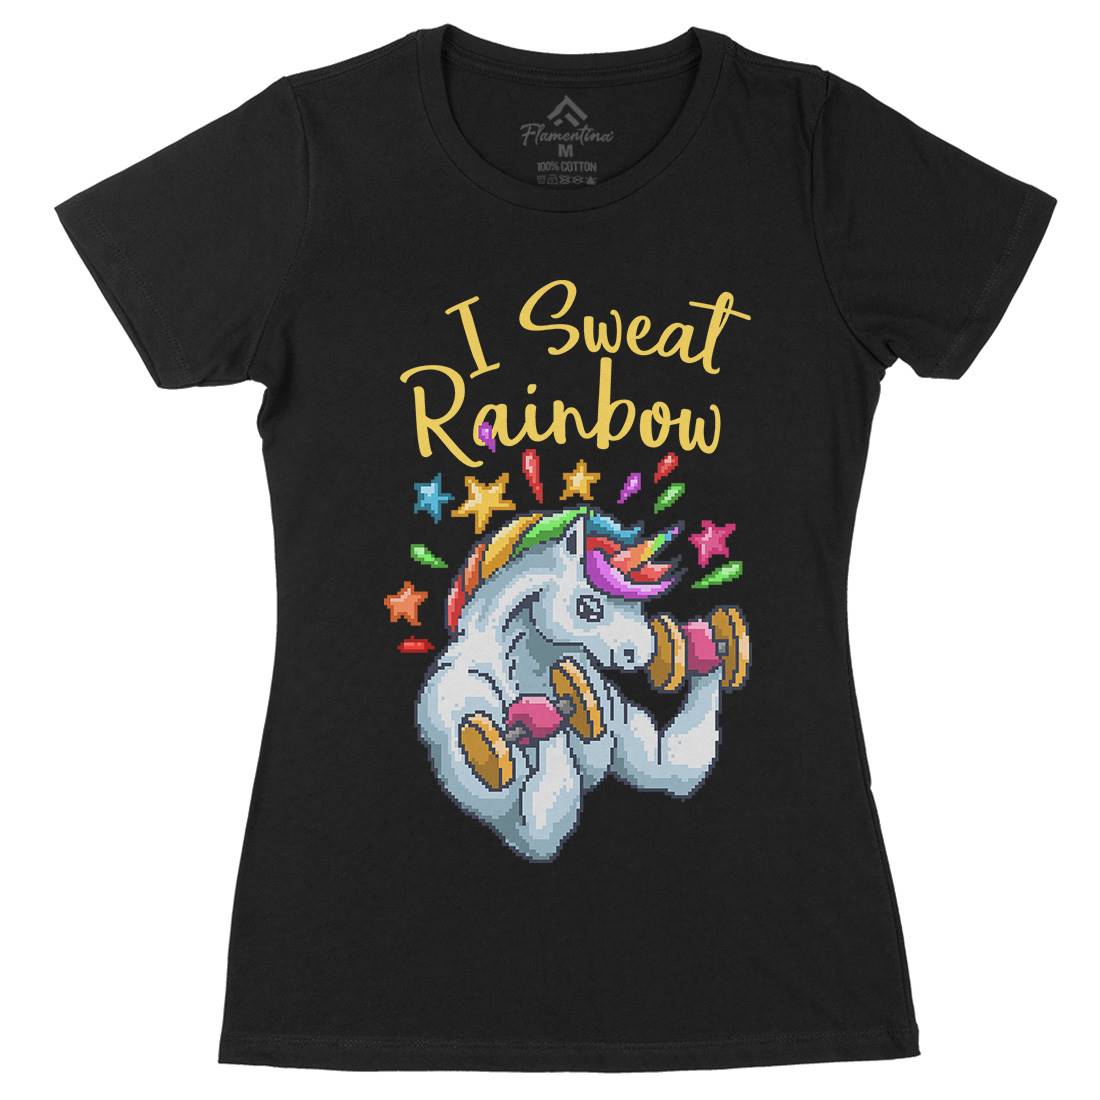 I Sweat Rainbow Womens Organic Crew Neck T-Shirt Retro B916